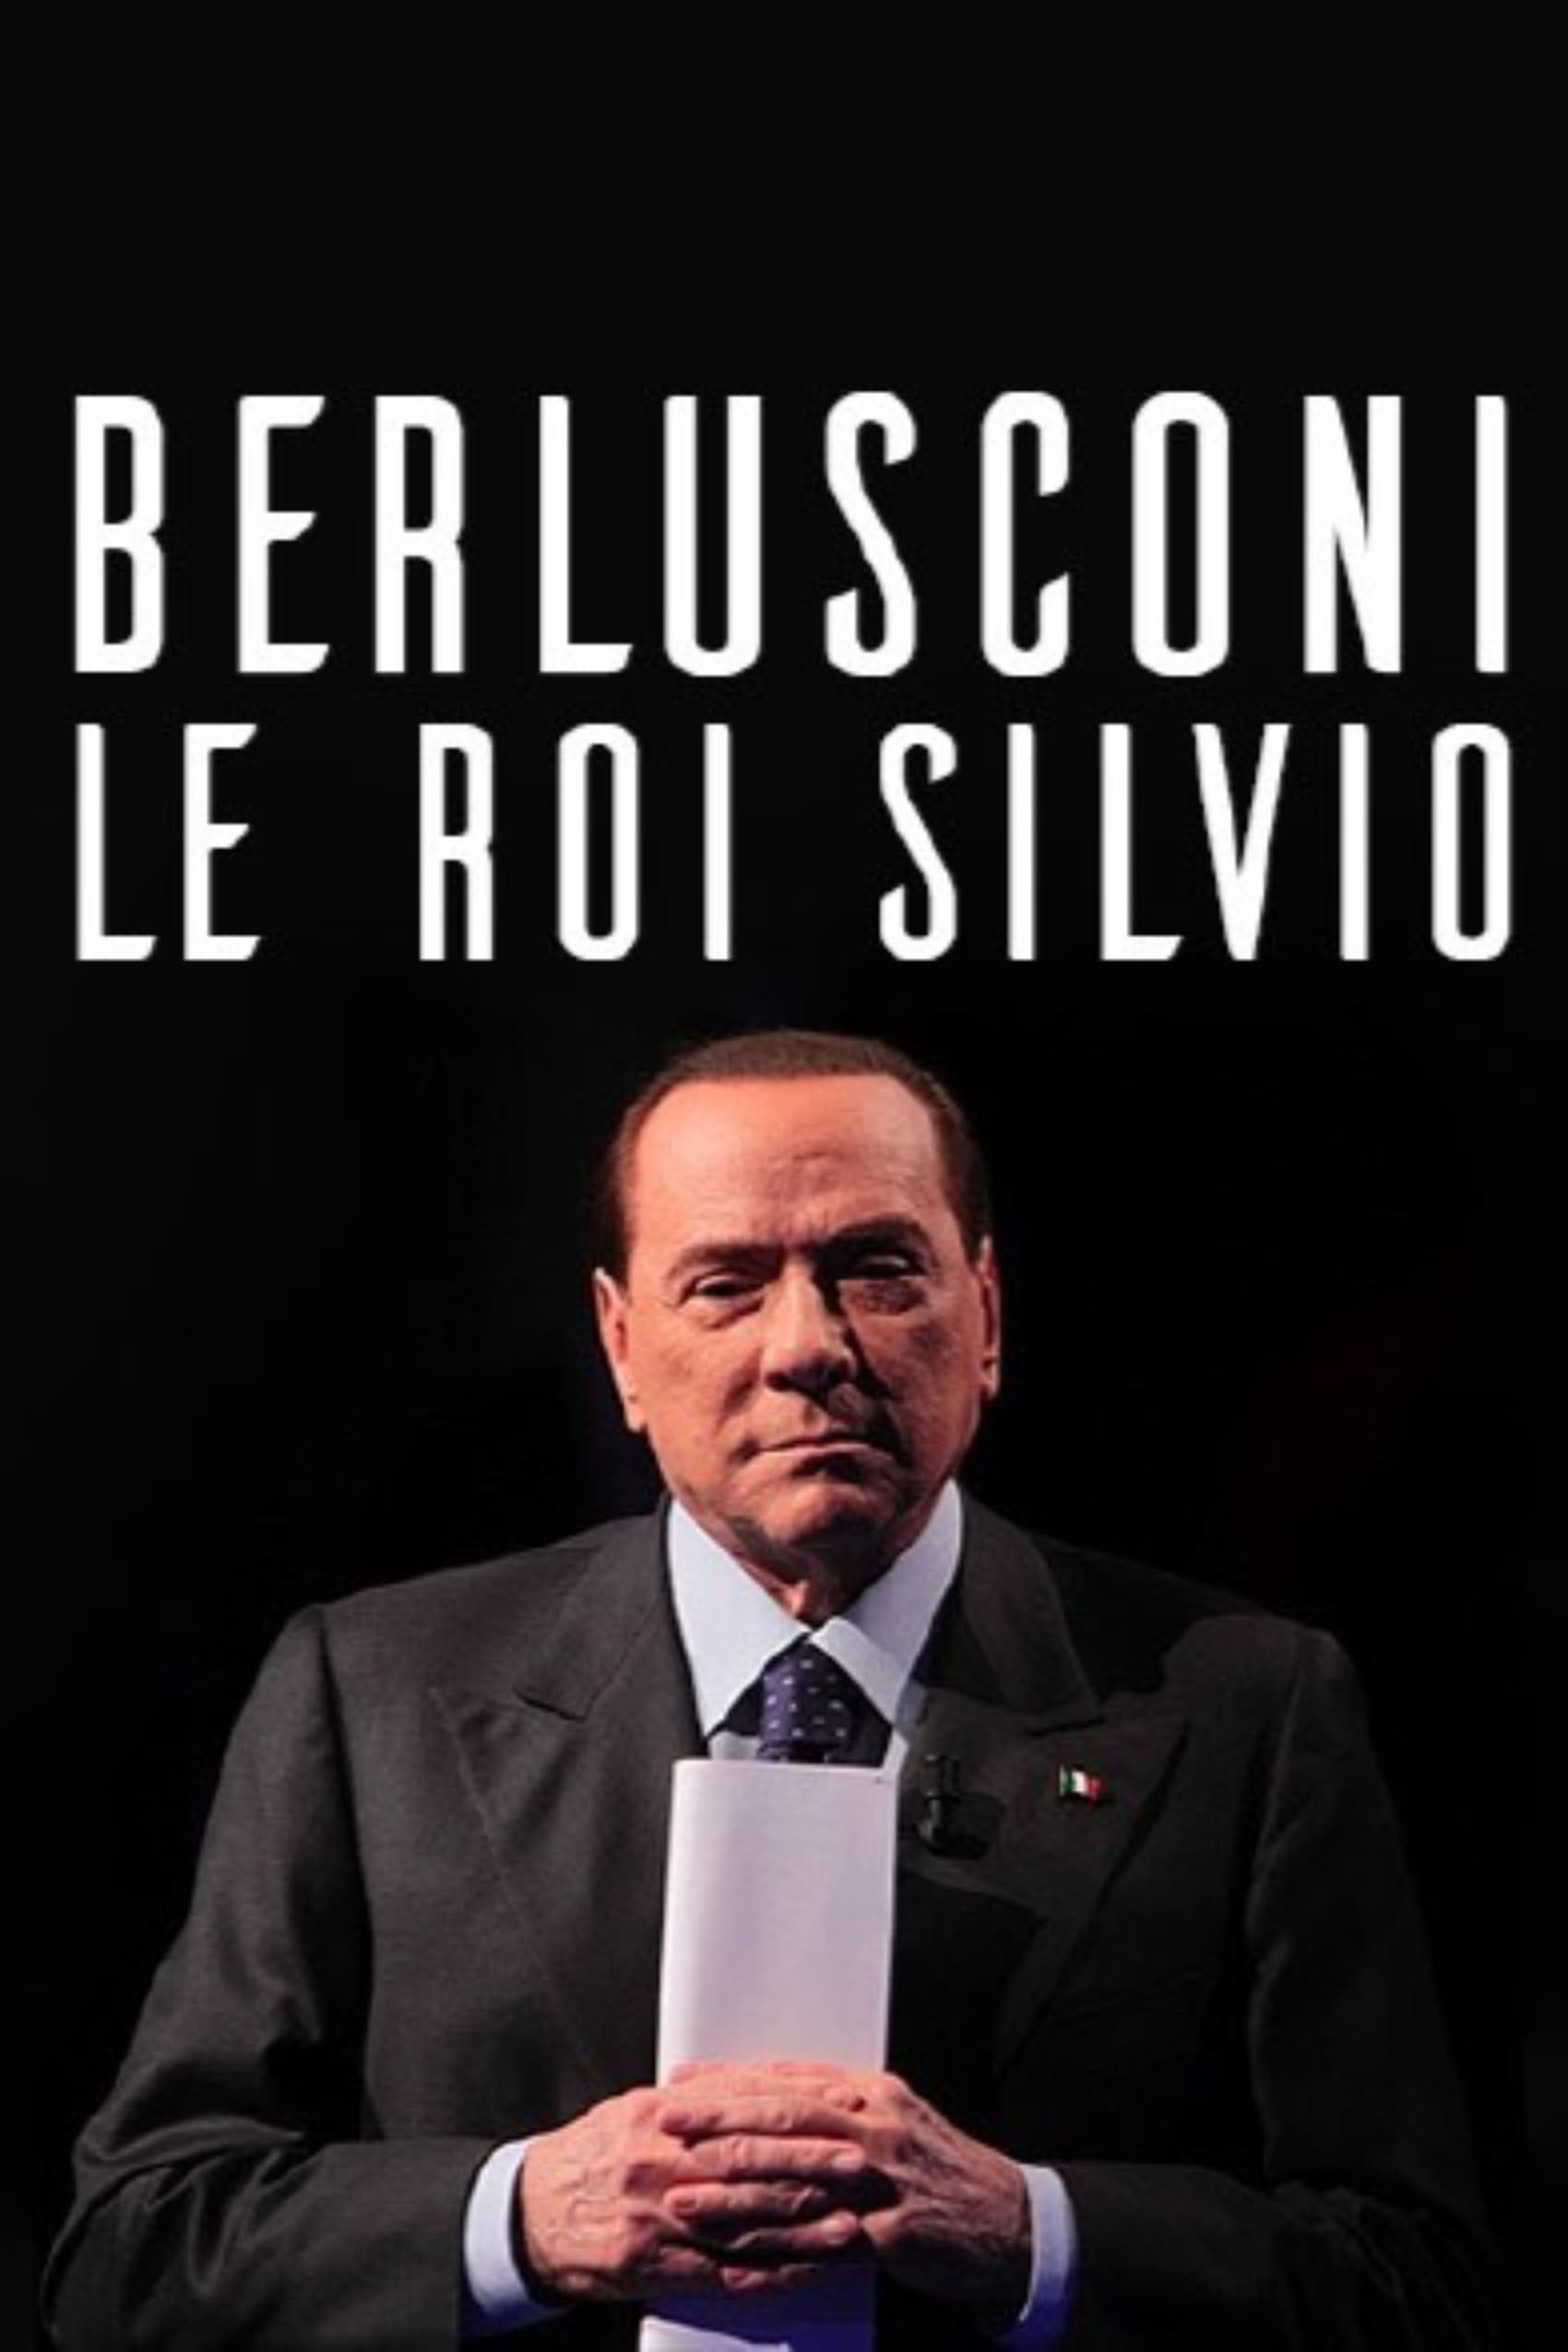 Berlusconi, le roi Silvio